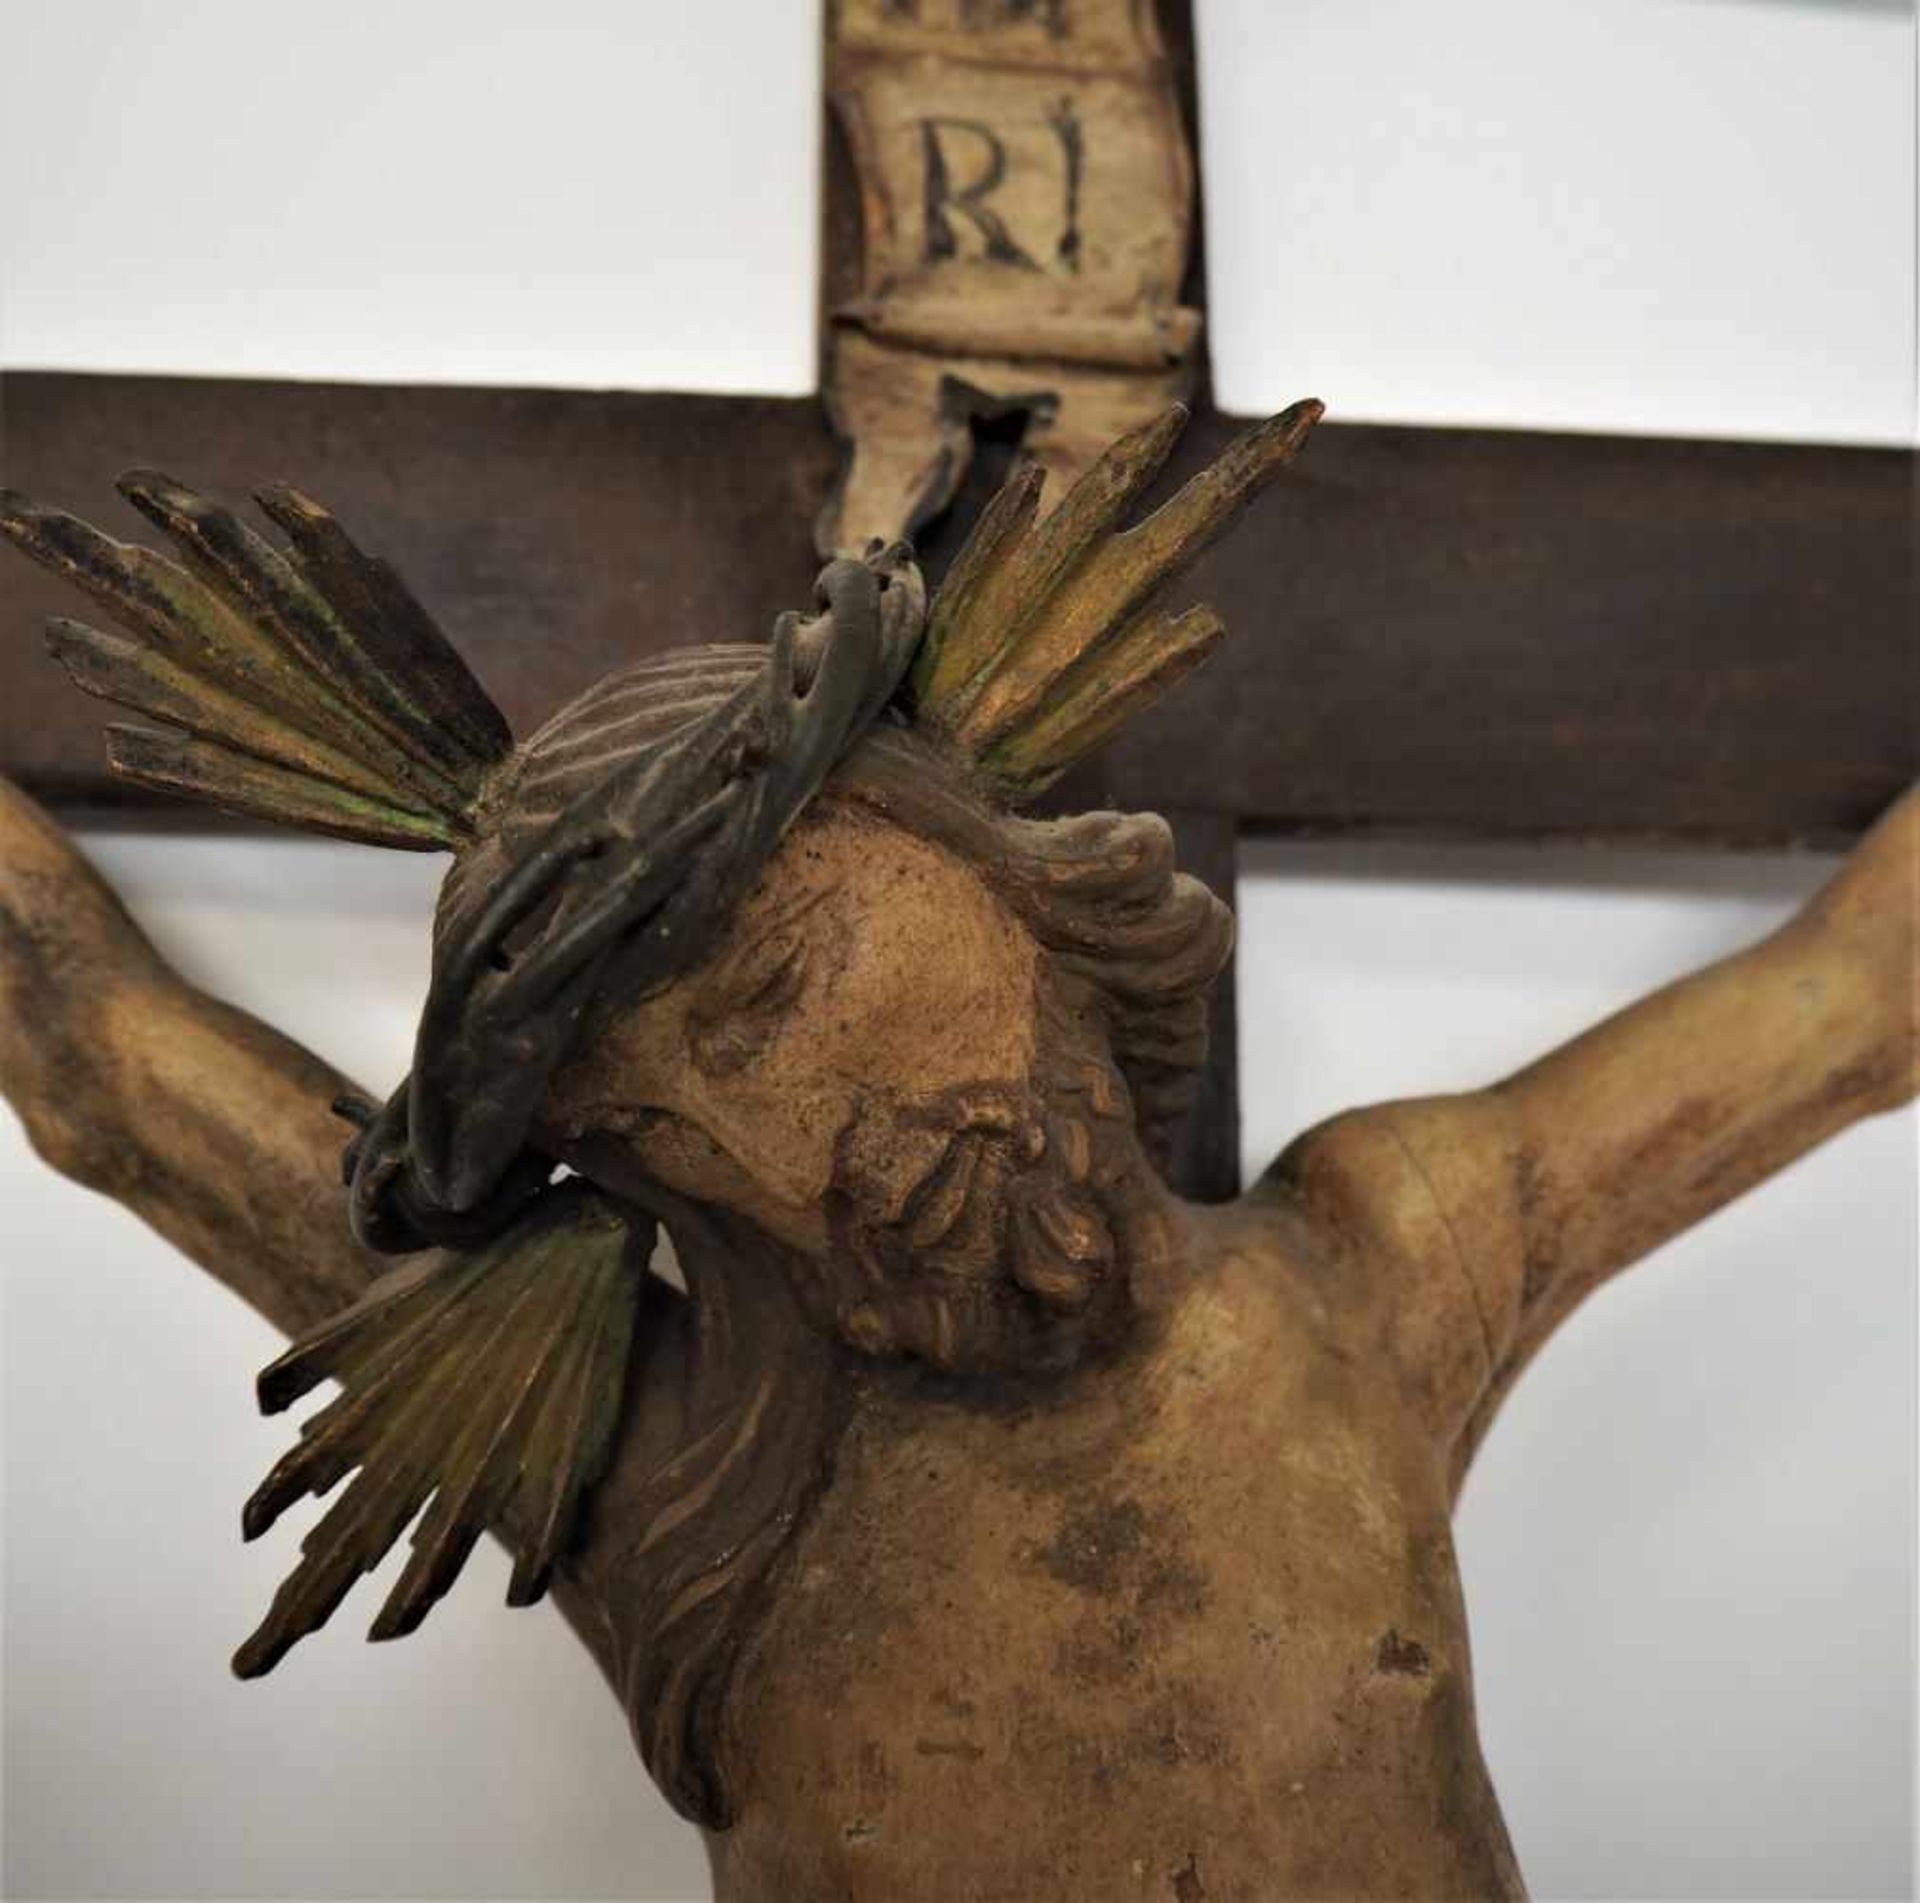 Kruzifix süddeutsch, wohl mitte 18. Jh.Holzkreuz gefasst und dunkel lasiert, profilierte Enden. - Image 2 of 3